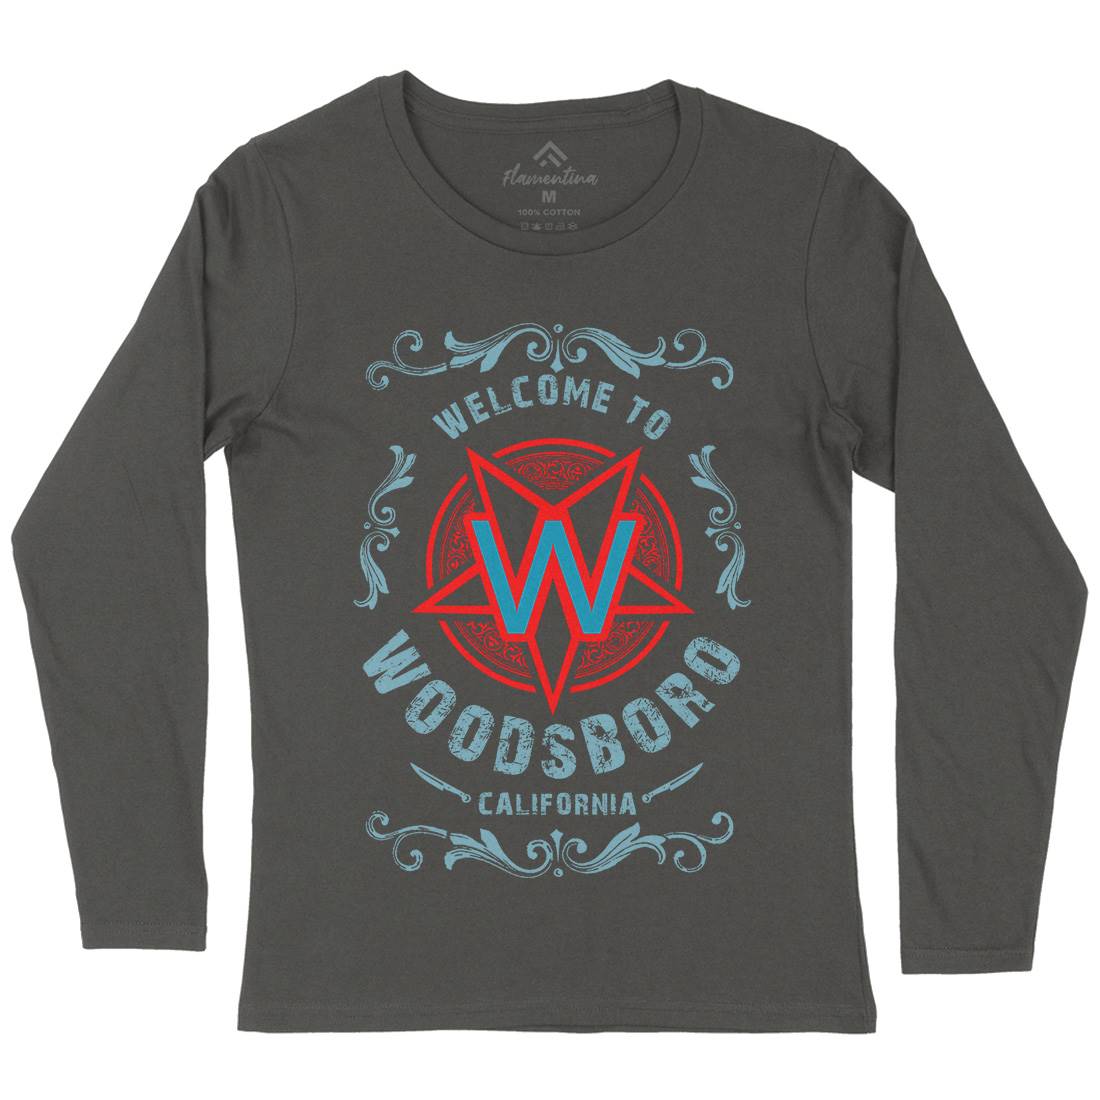 Woodsboro Womens Long Sleeve T-Shirt Horror D292